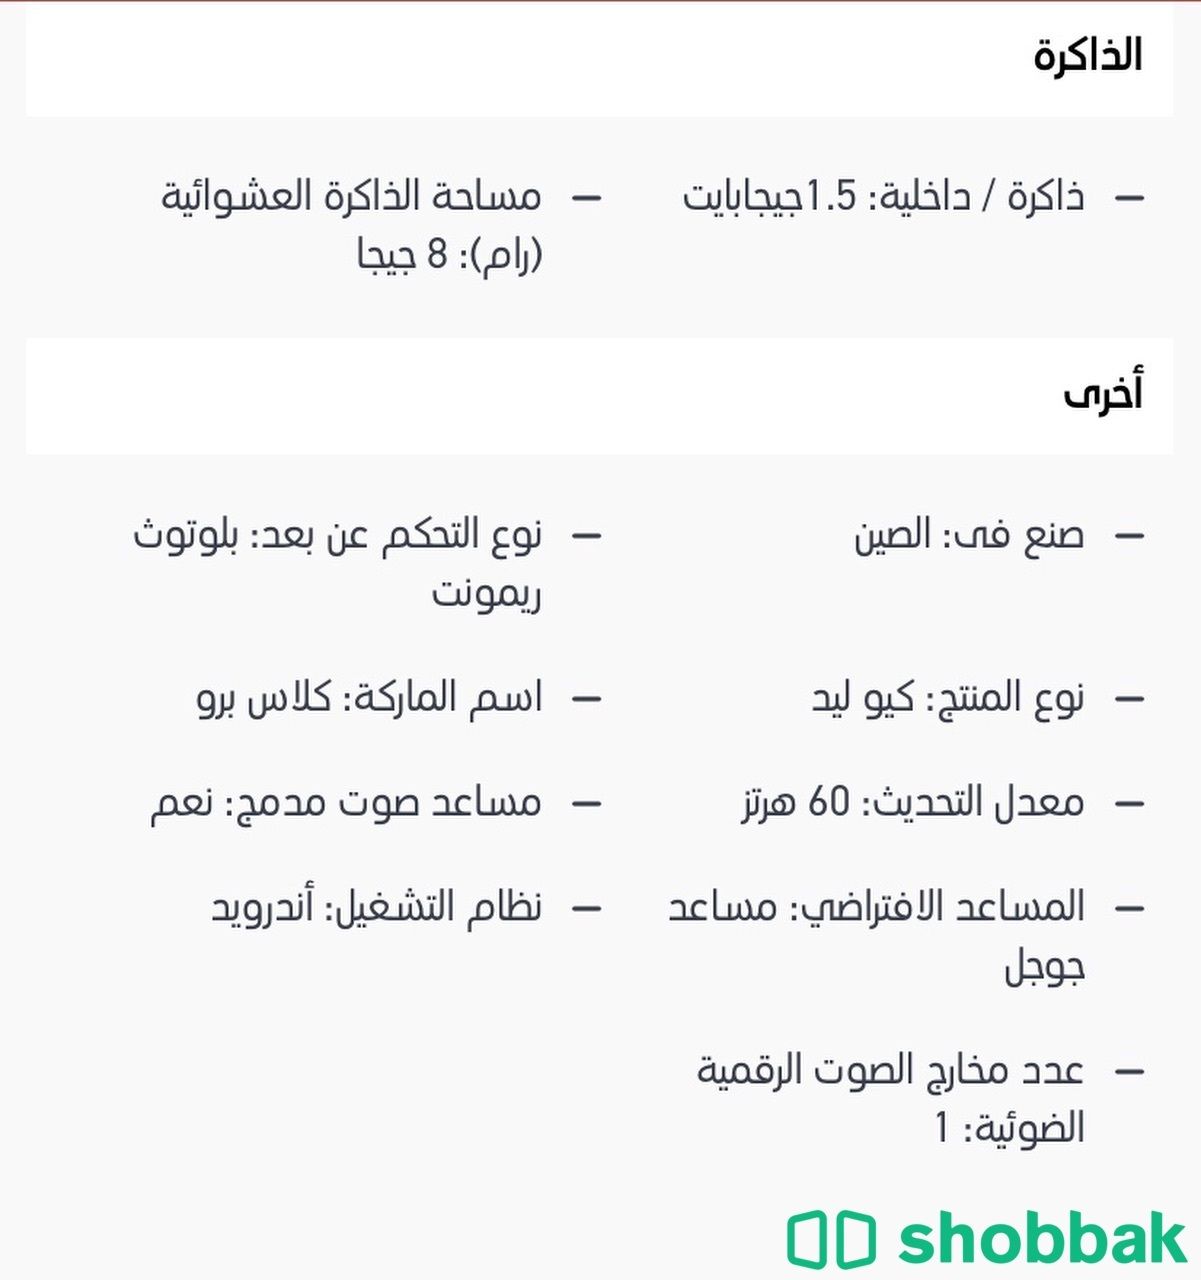 شاشة كلاس برو 65 بوصة  Shobbak Saudi Arabia